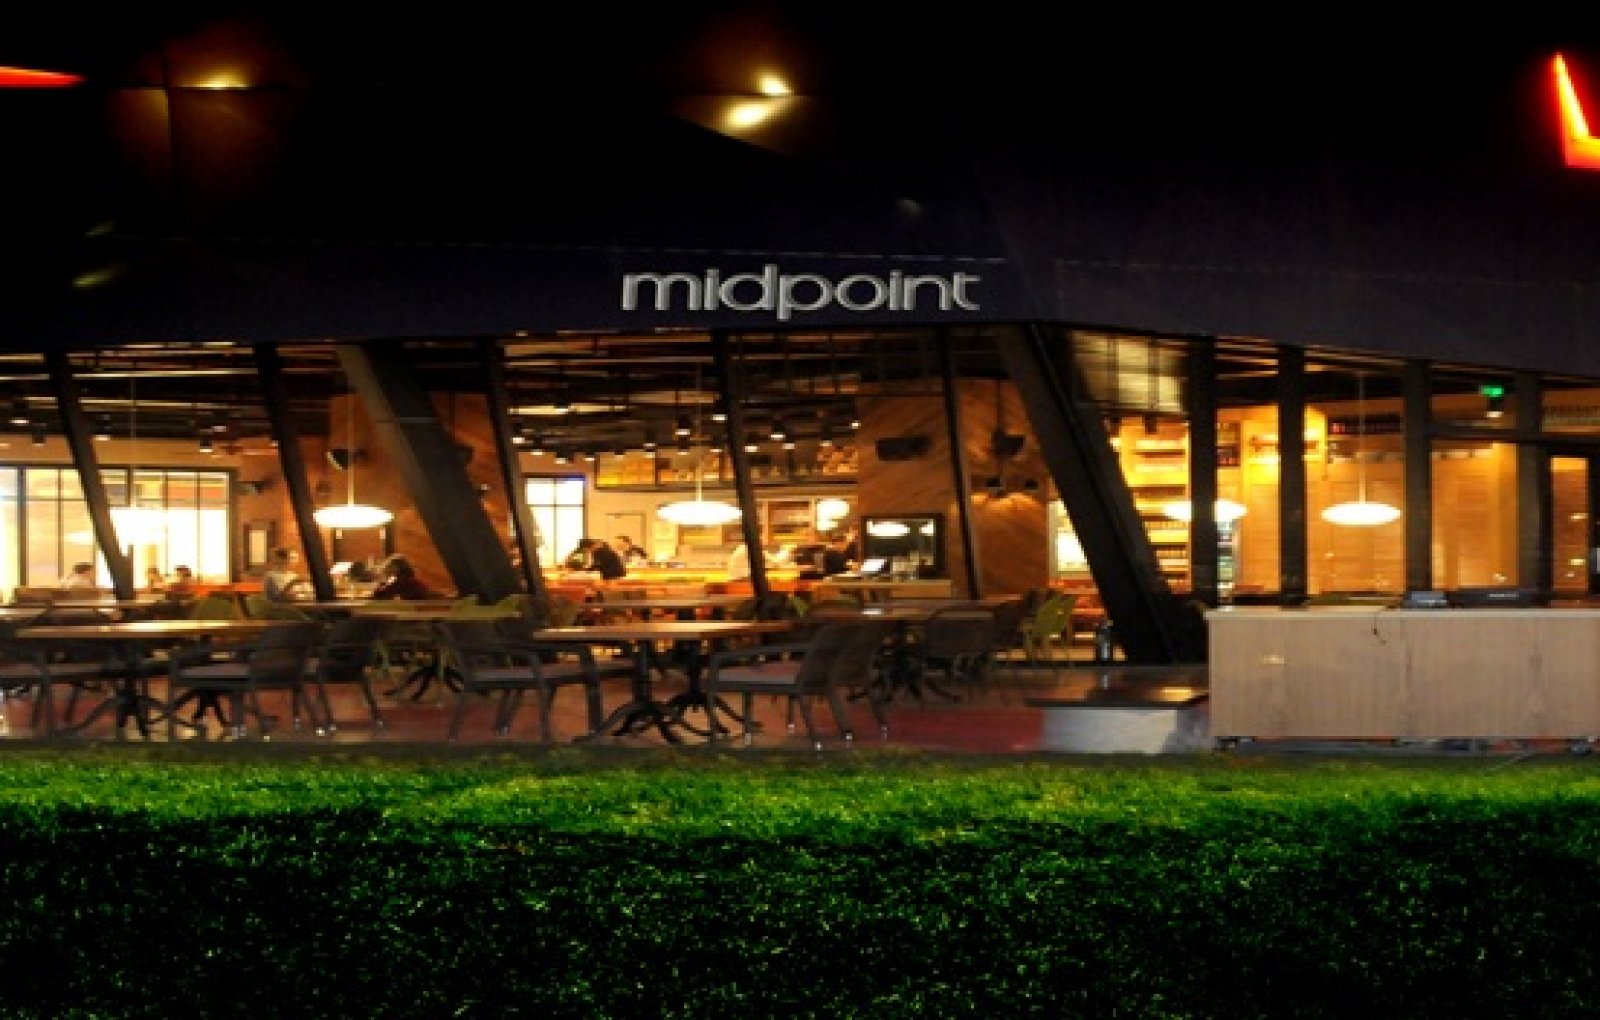 İstanbul Şaşkınbakkal Midpoint Cafe